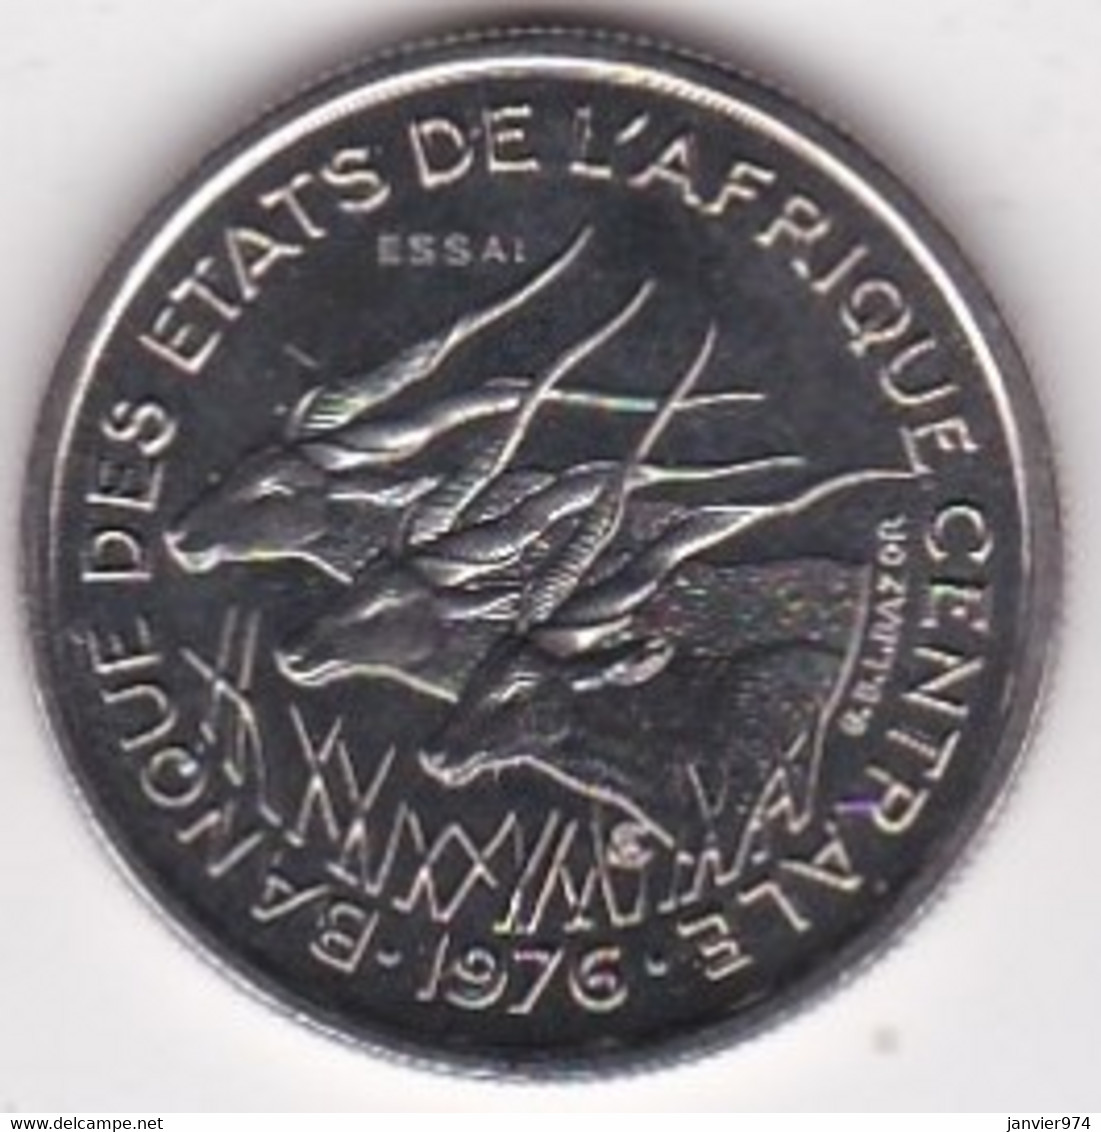 Republique Centrafricaine 50 Francs ESSAI 1976 B. Bronze Aluminium. KM# E 8 - República Centroafricana